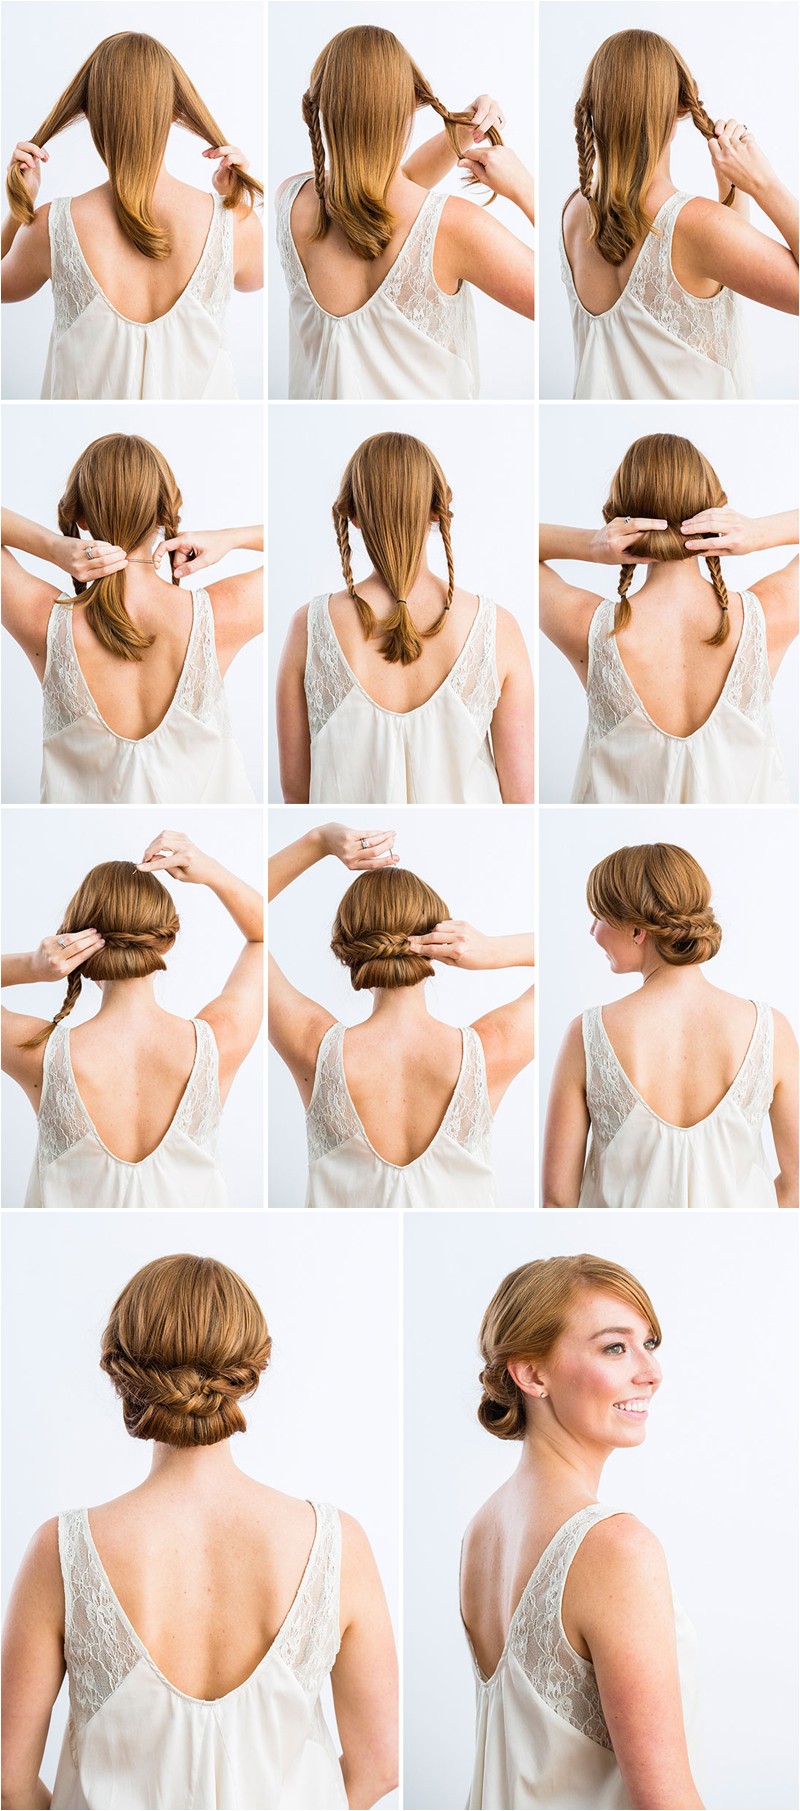 10 best diy wedding hairstyles with tutorials